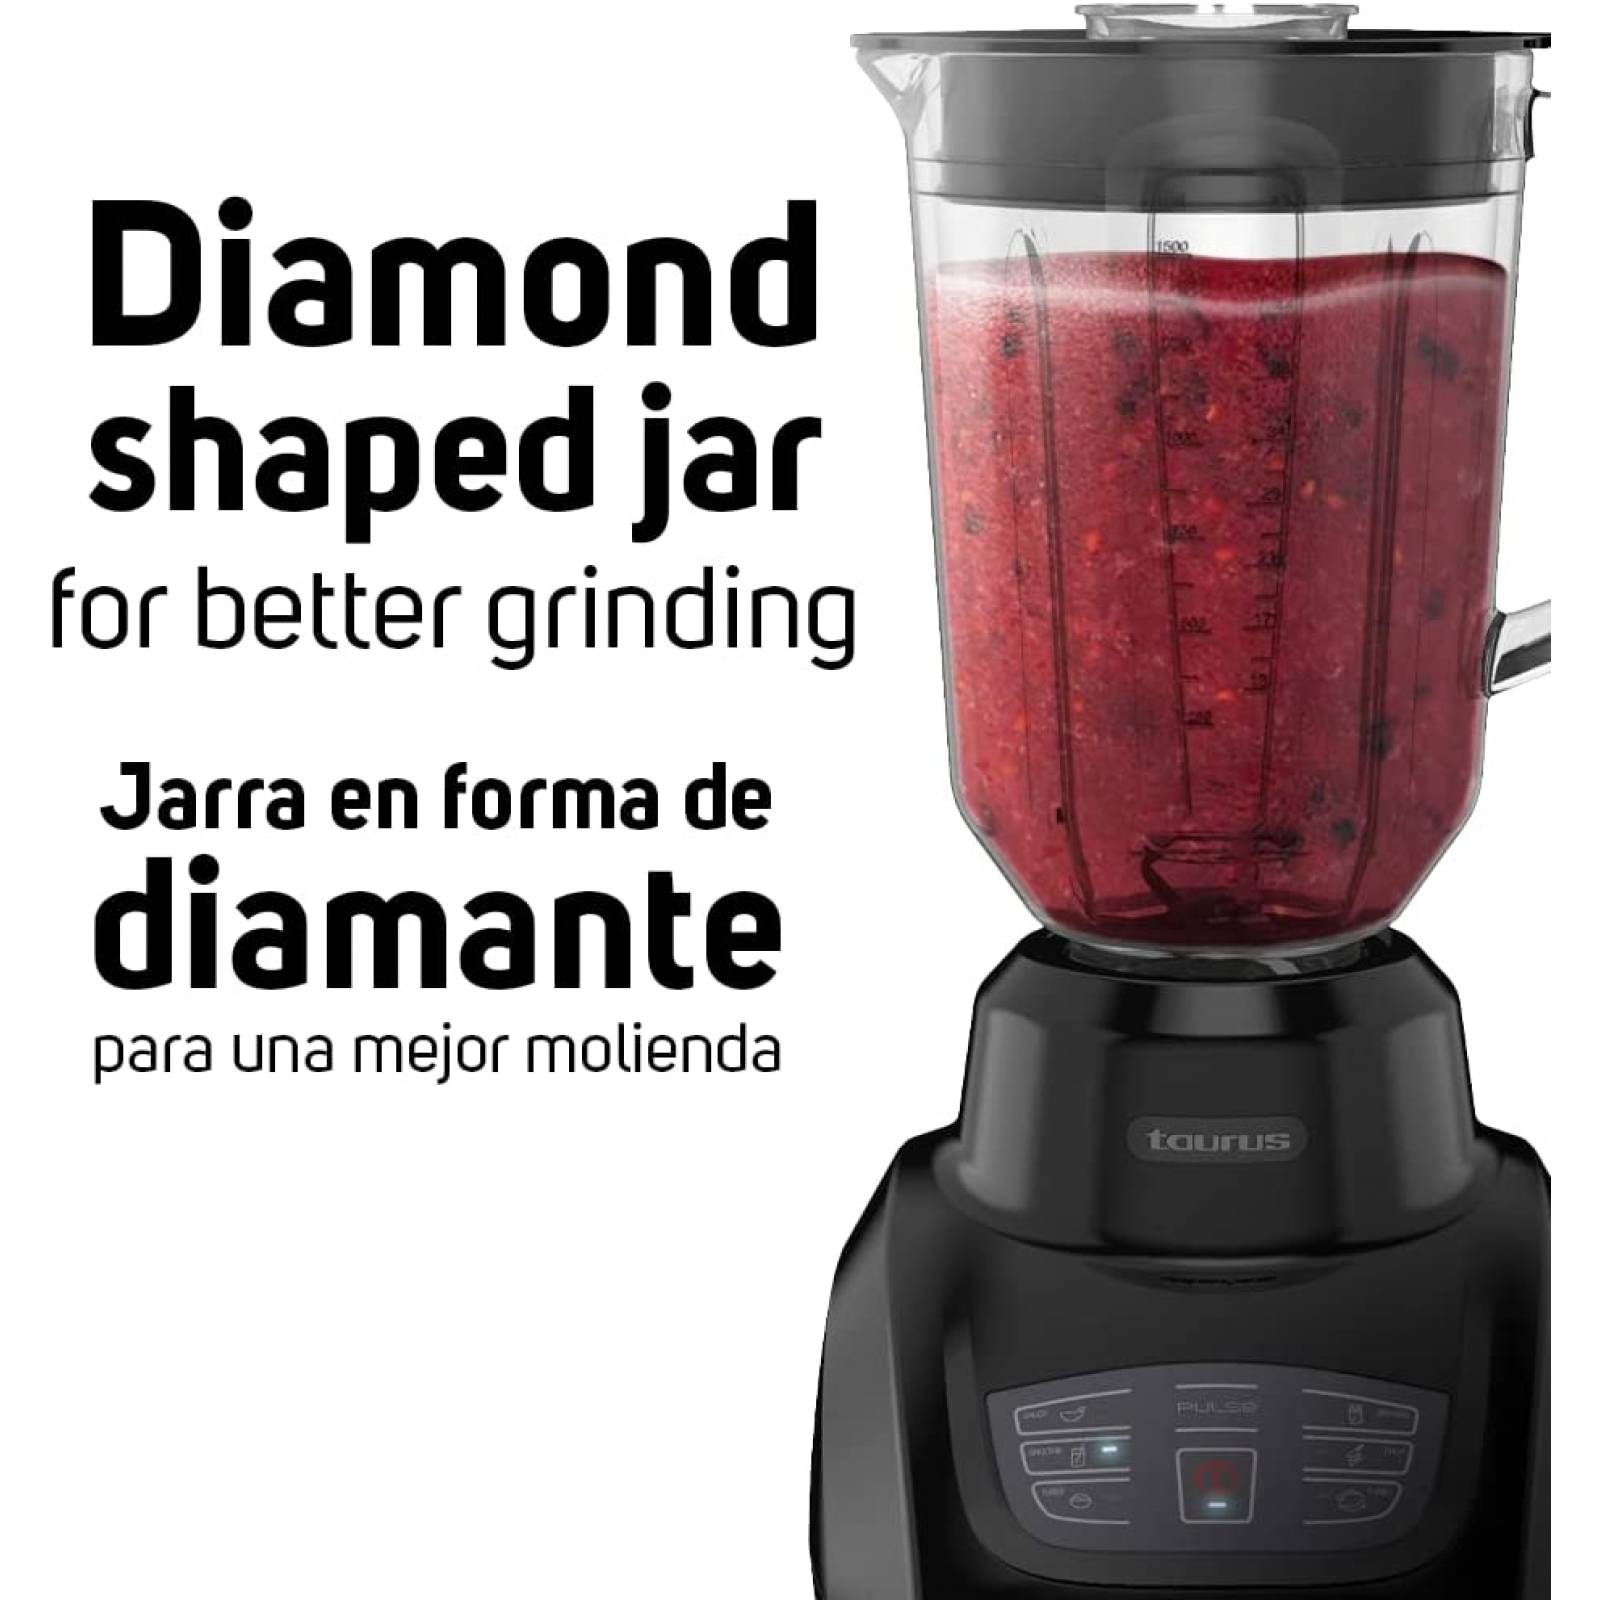 Batidora de vaso Kitchen Aid roja con jarra en forma de diamante.